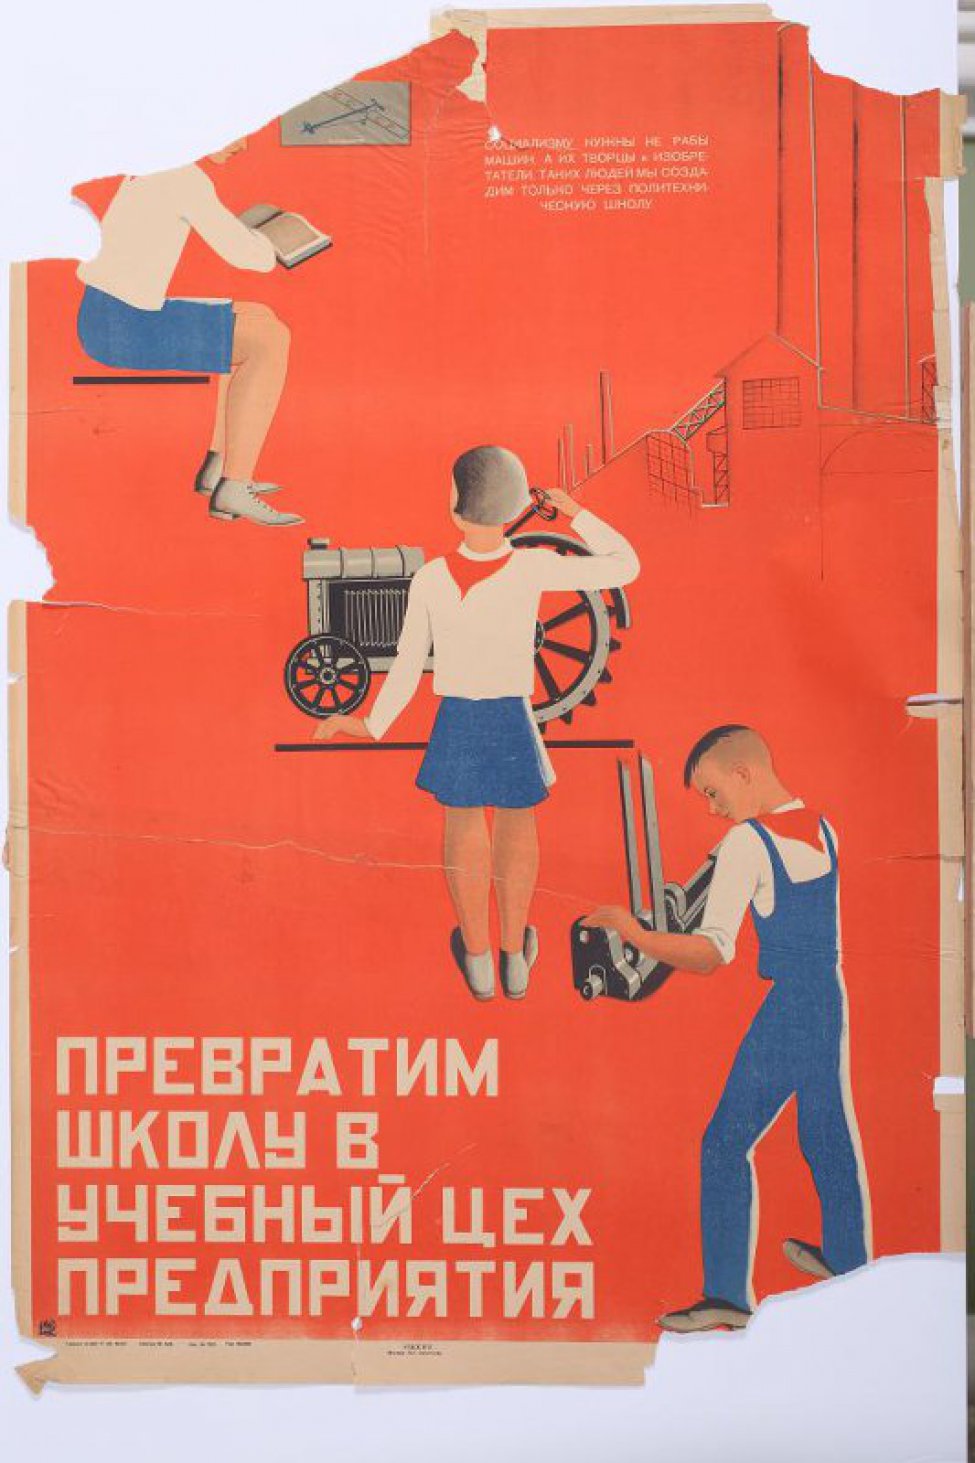 Изображены три пионера на красном фоне. В верху автомоделист за чтением, в середине девочка, опирающаяся на модель трактора. На верху текст:         " Социализму Школу".